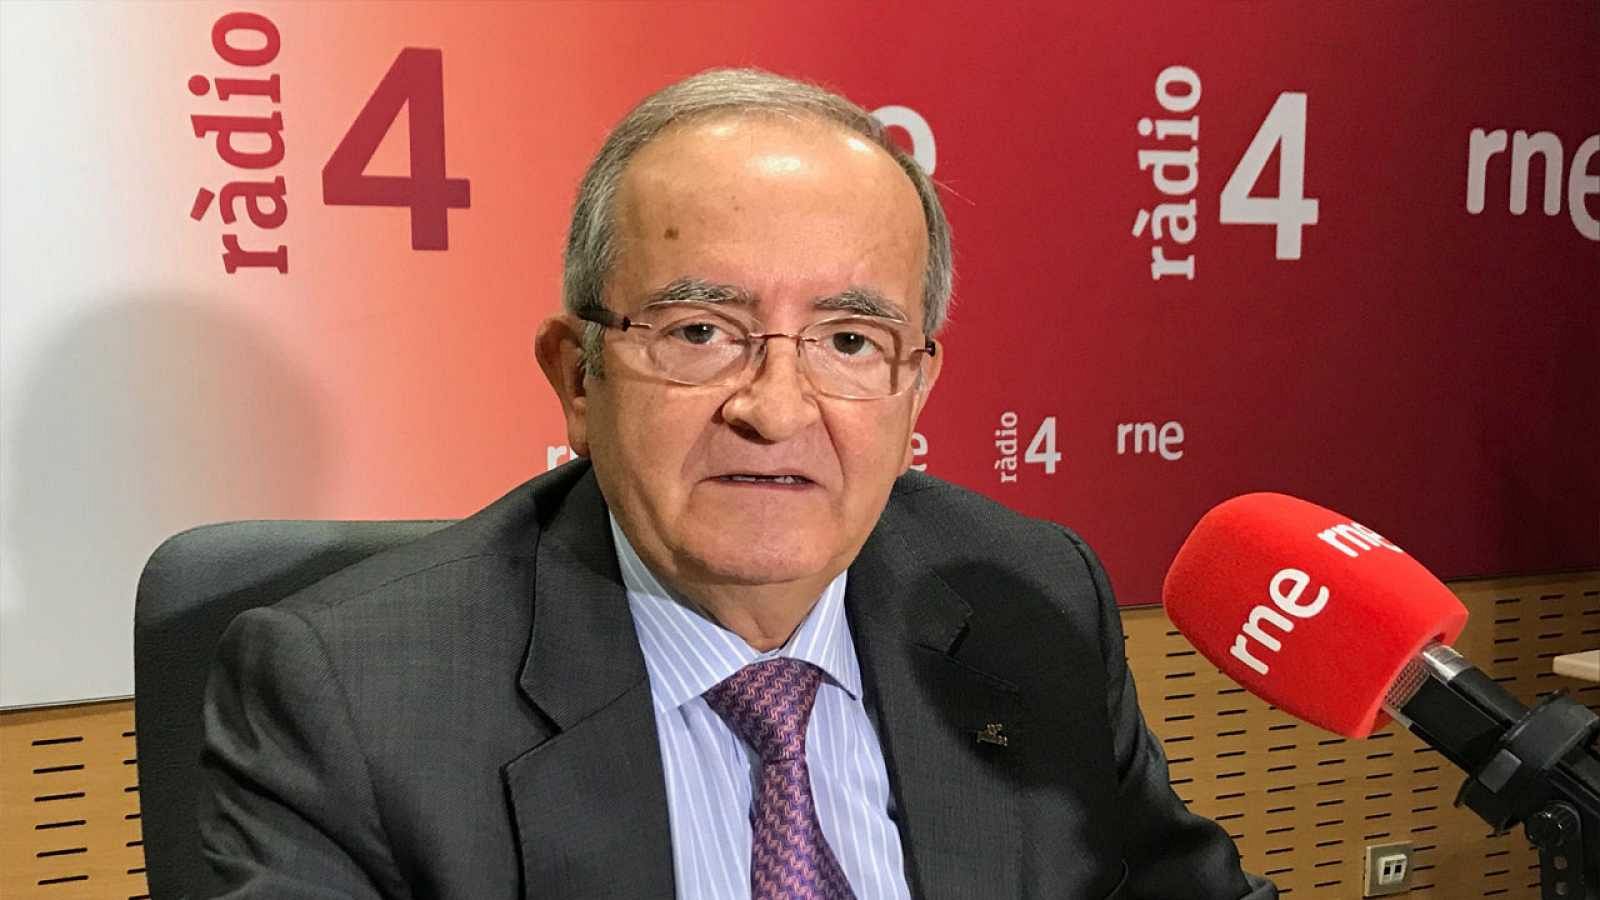 Las mañanas de RNE con íñigo Alfonso - González (PIMEC): "Cataluña debería asistir al Consejo de Política Fiscal y Financiera" - Escuchar ahora